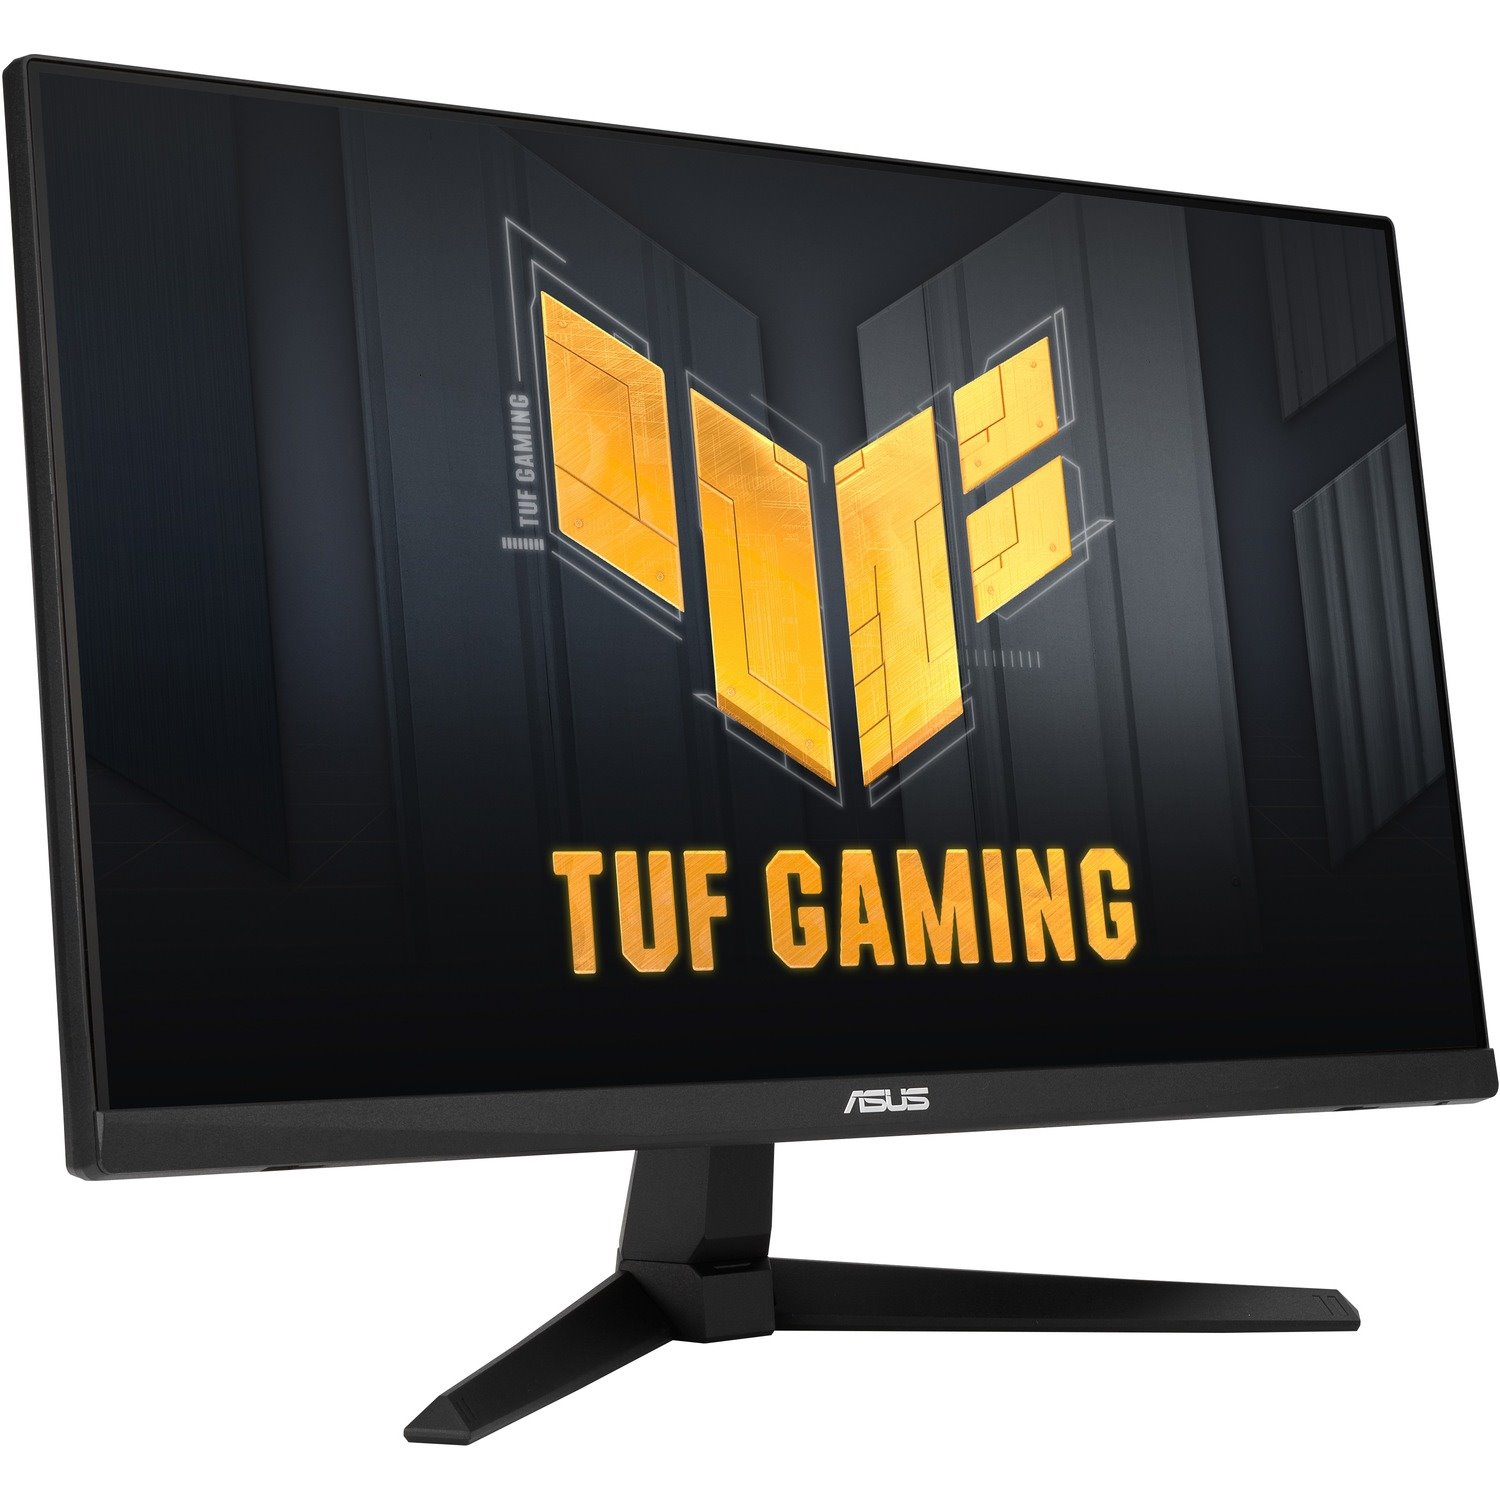 TUF VG249QM1A 23.8" Full HD WLED Gaming LCD Monitor - 16:9 - Black